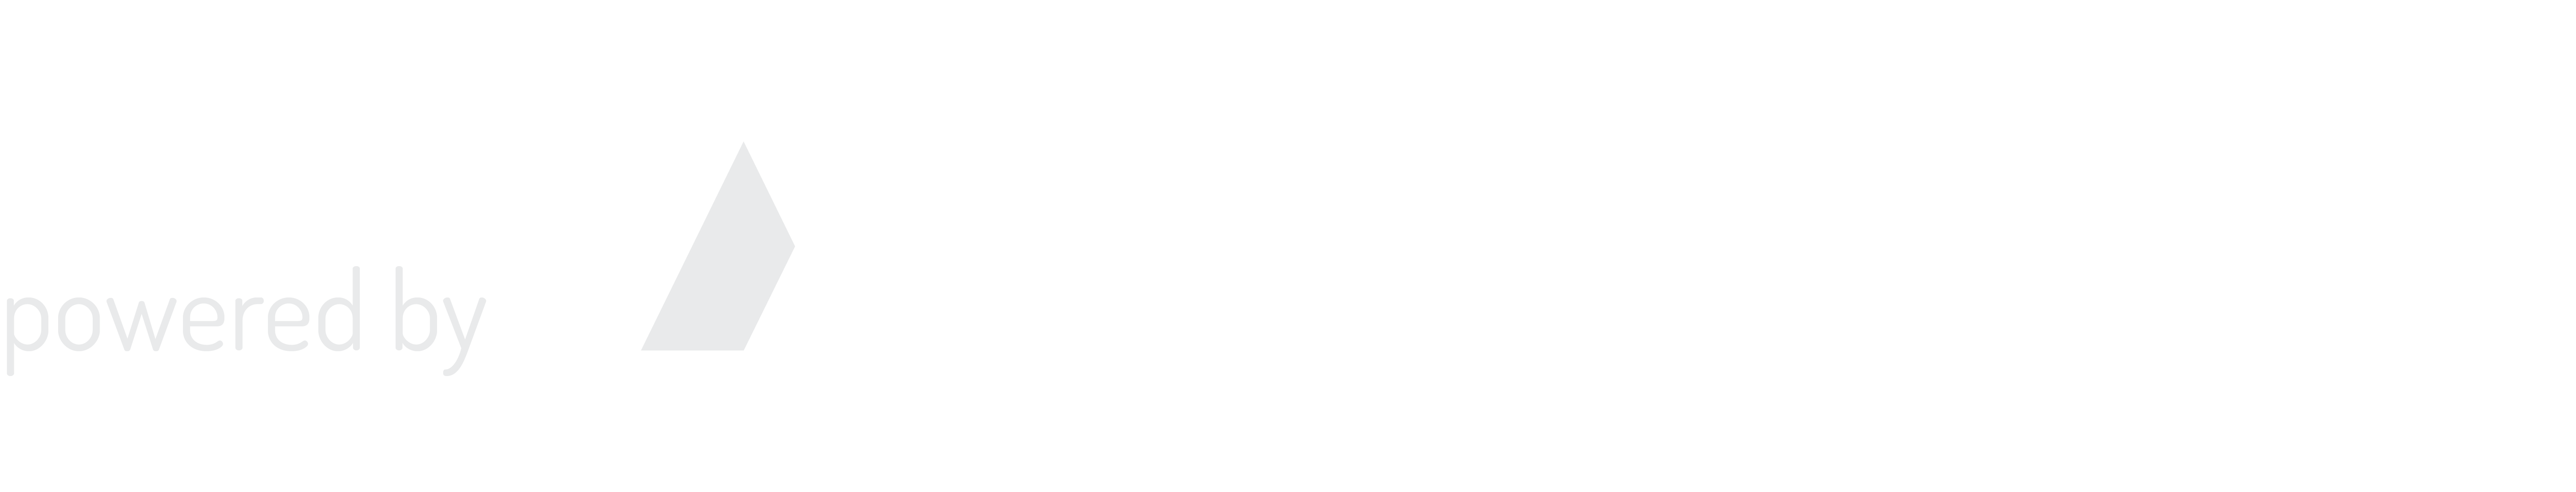 Powered by Washington Post Arc Publishing